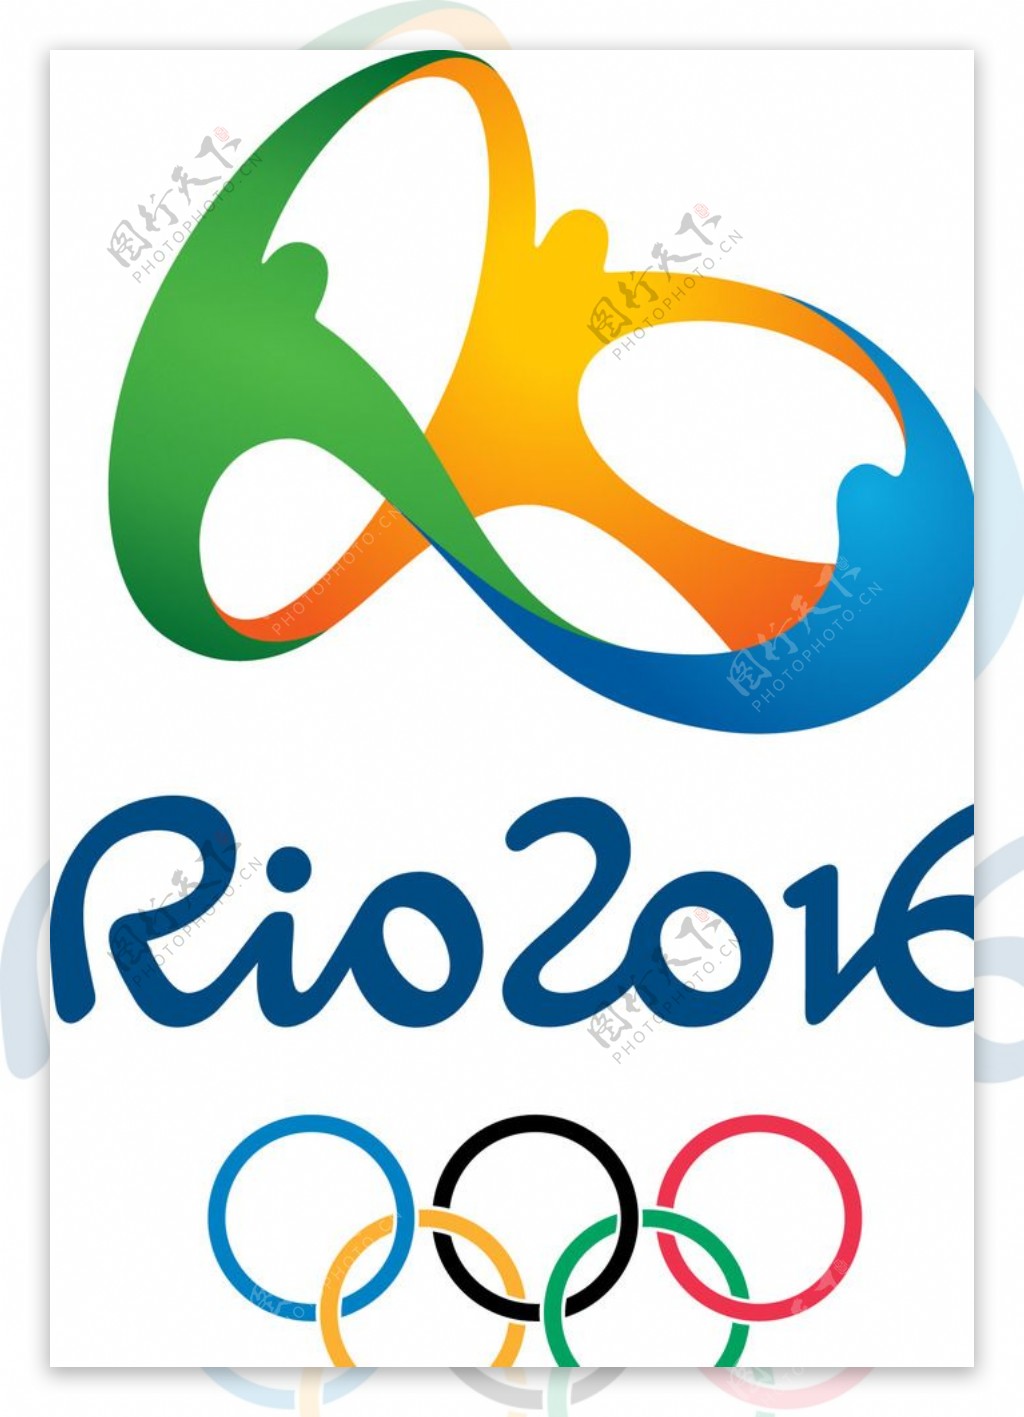 里约奥运图标